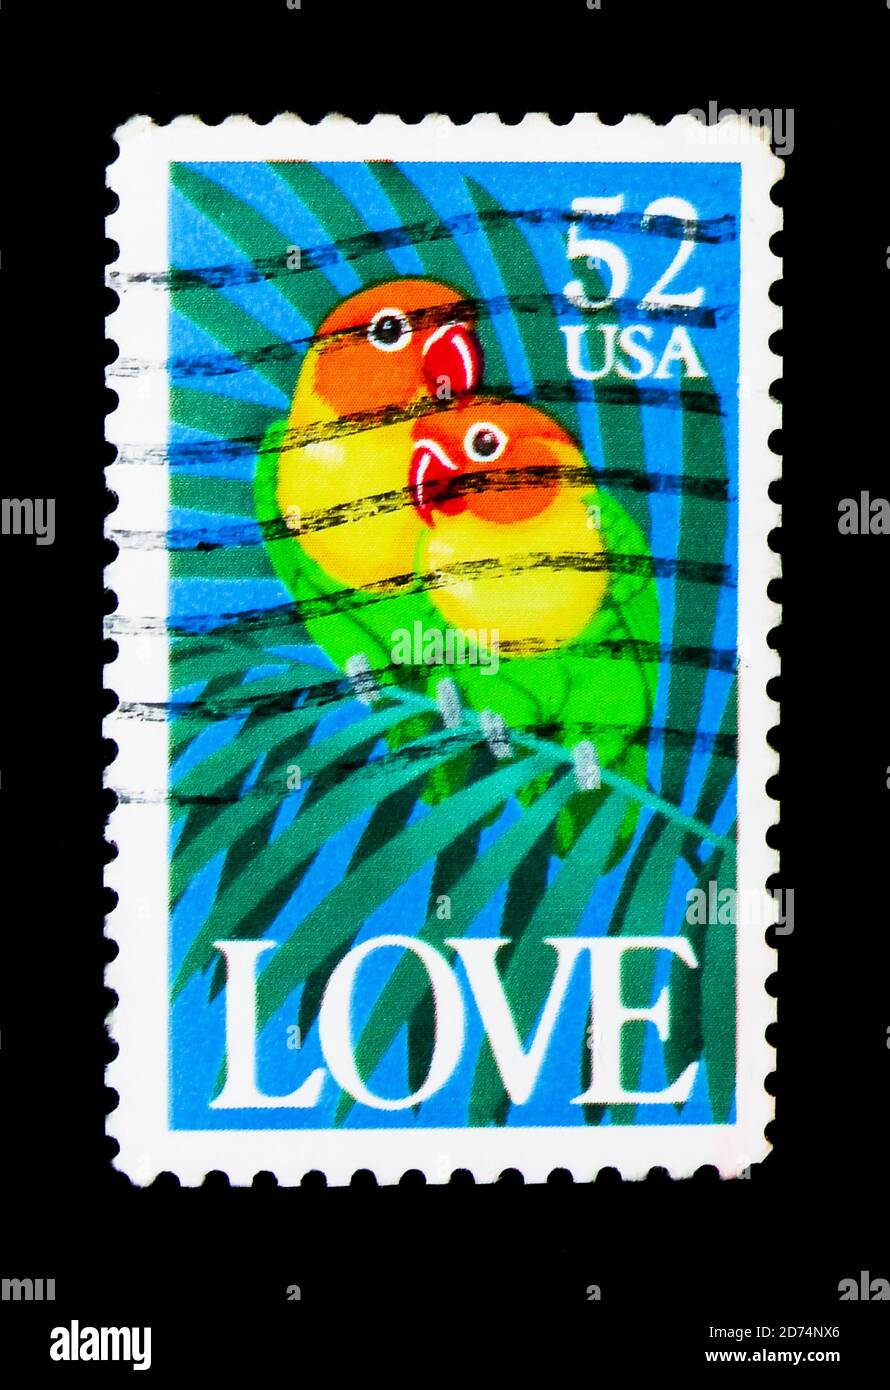 MOSCOU, RUSSIE - 24 NOVEMBRE 2017 : un timbre imprimé aux États-Unis montre le lovebird de Fischer (Agapornis fischeri), série Amour, vers 1991 Banque D'Images